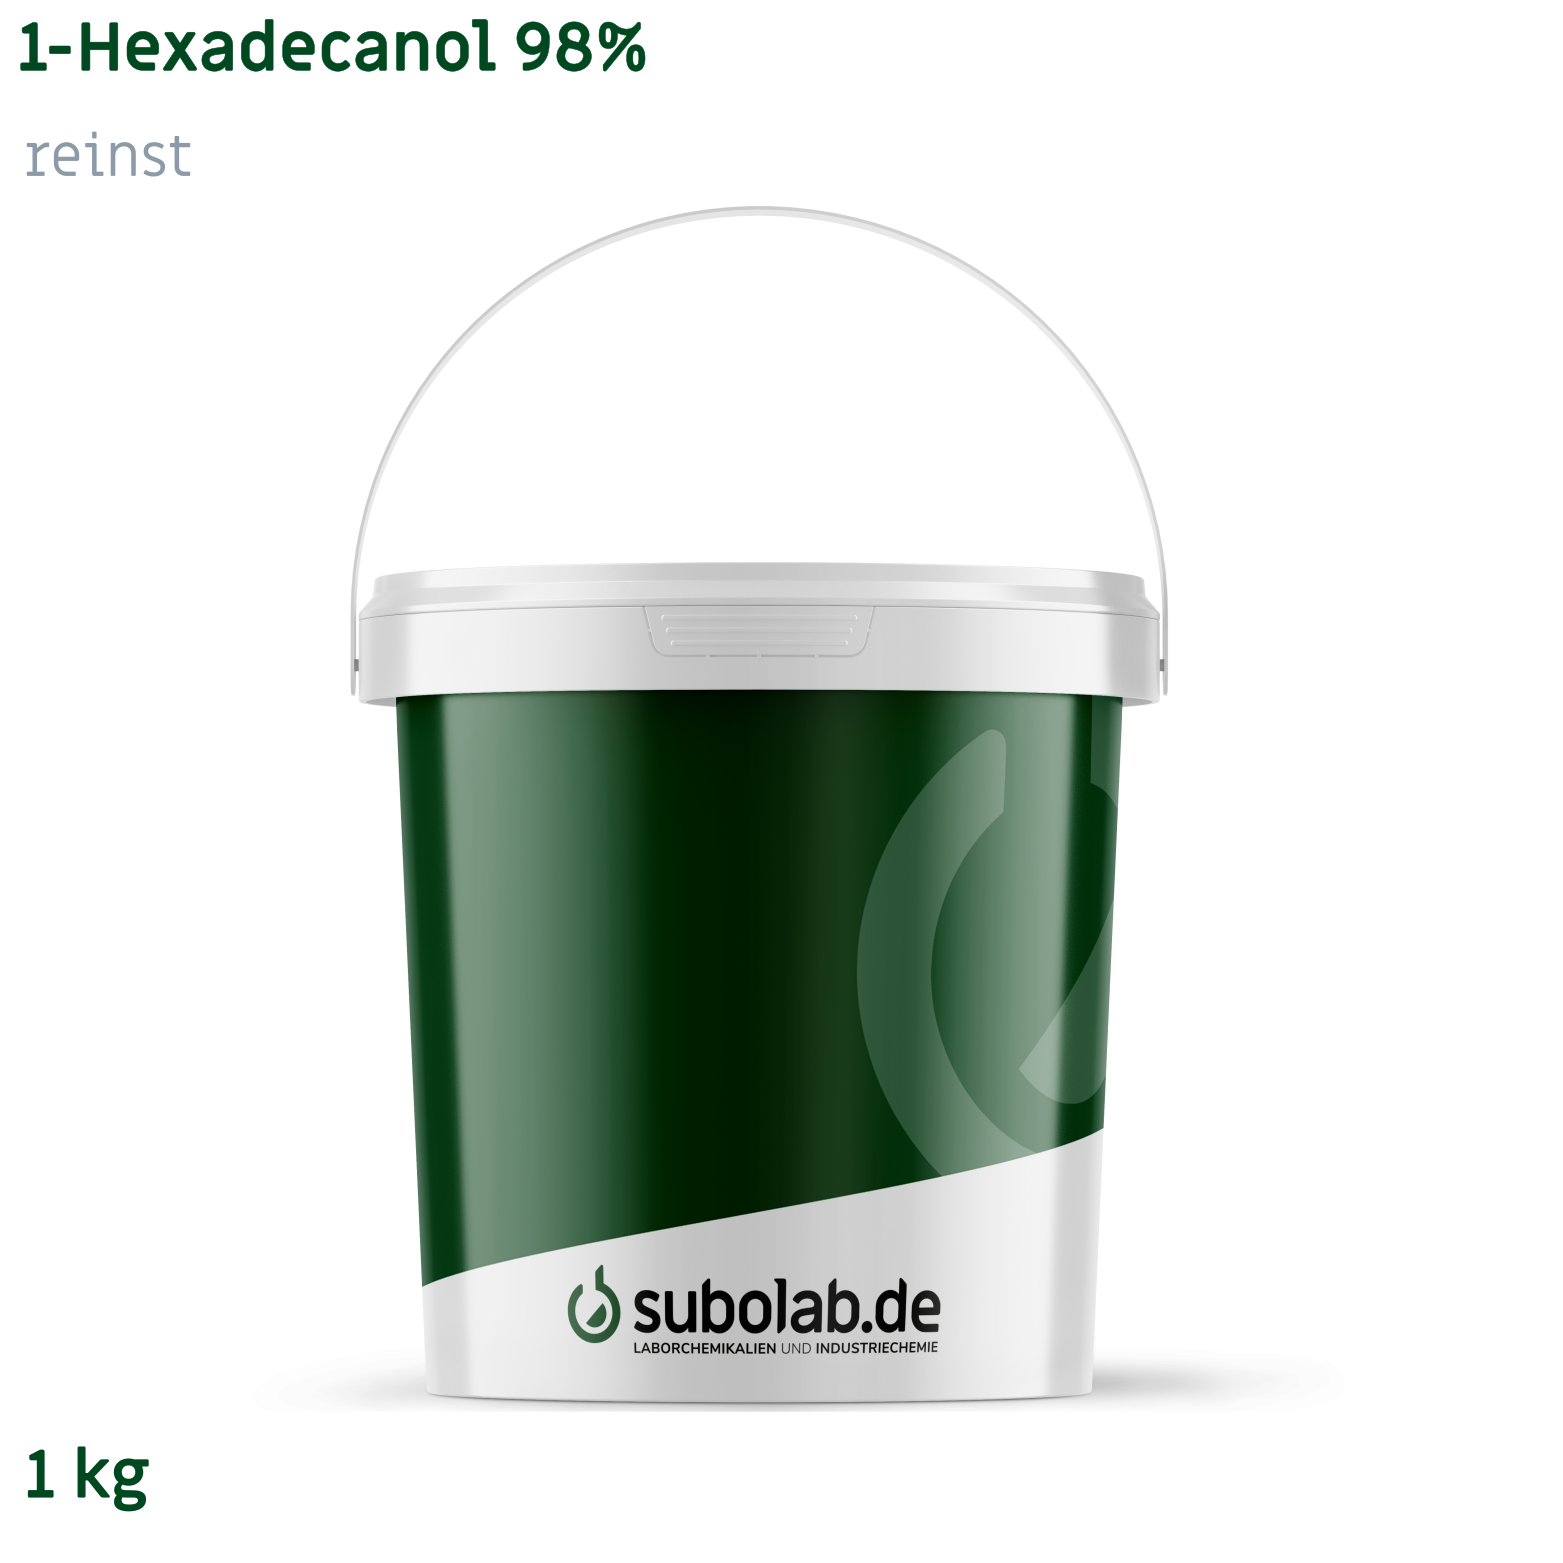 Bild von 1-Hexadecanol 98% reinst (1 kg)